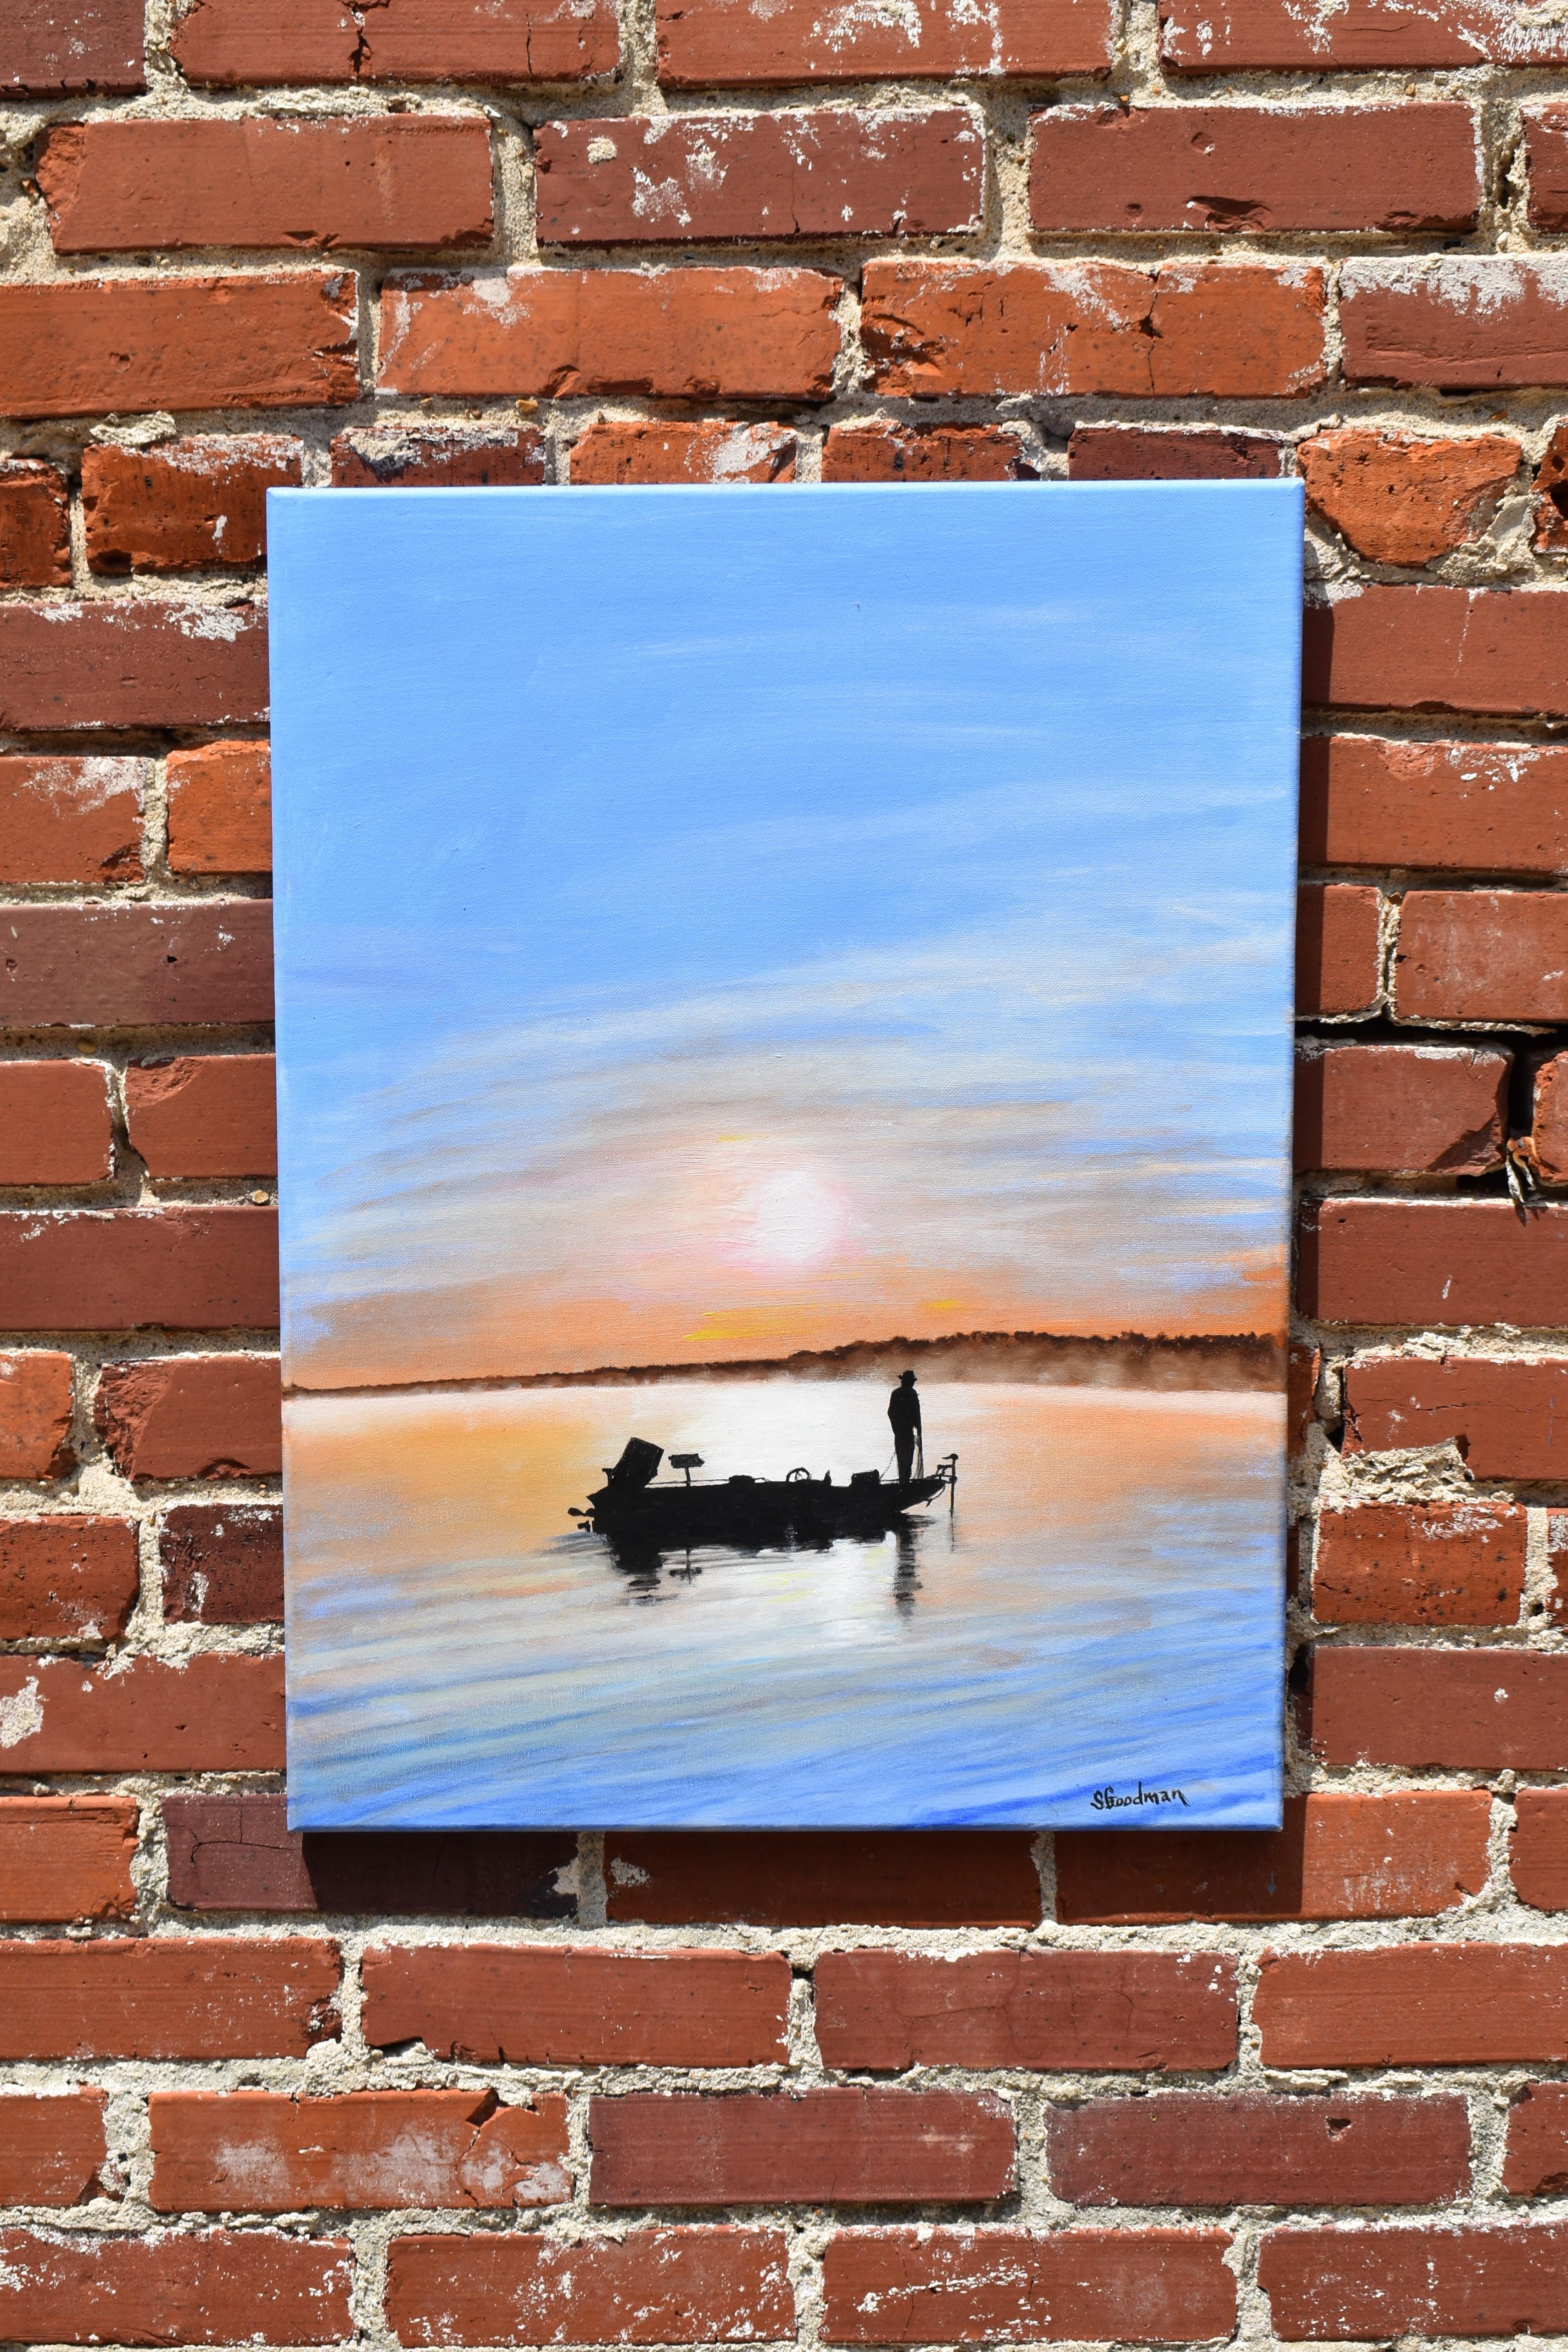 <p>Kommentare des Künstlers<br>Die Künstlerin Shela Goodman malt die Silhouette eines Mannes in seinem Boot, das friedlich auf einem hellen, stillen See treibt. Mit hochgefahrenem Motor und einem Seil in der Hand scheint er sich auf einen frühen